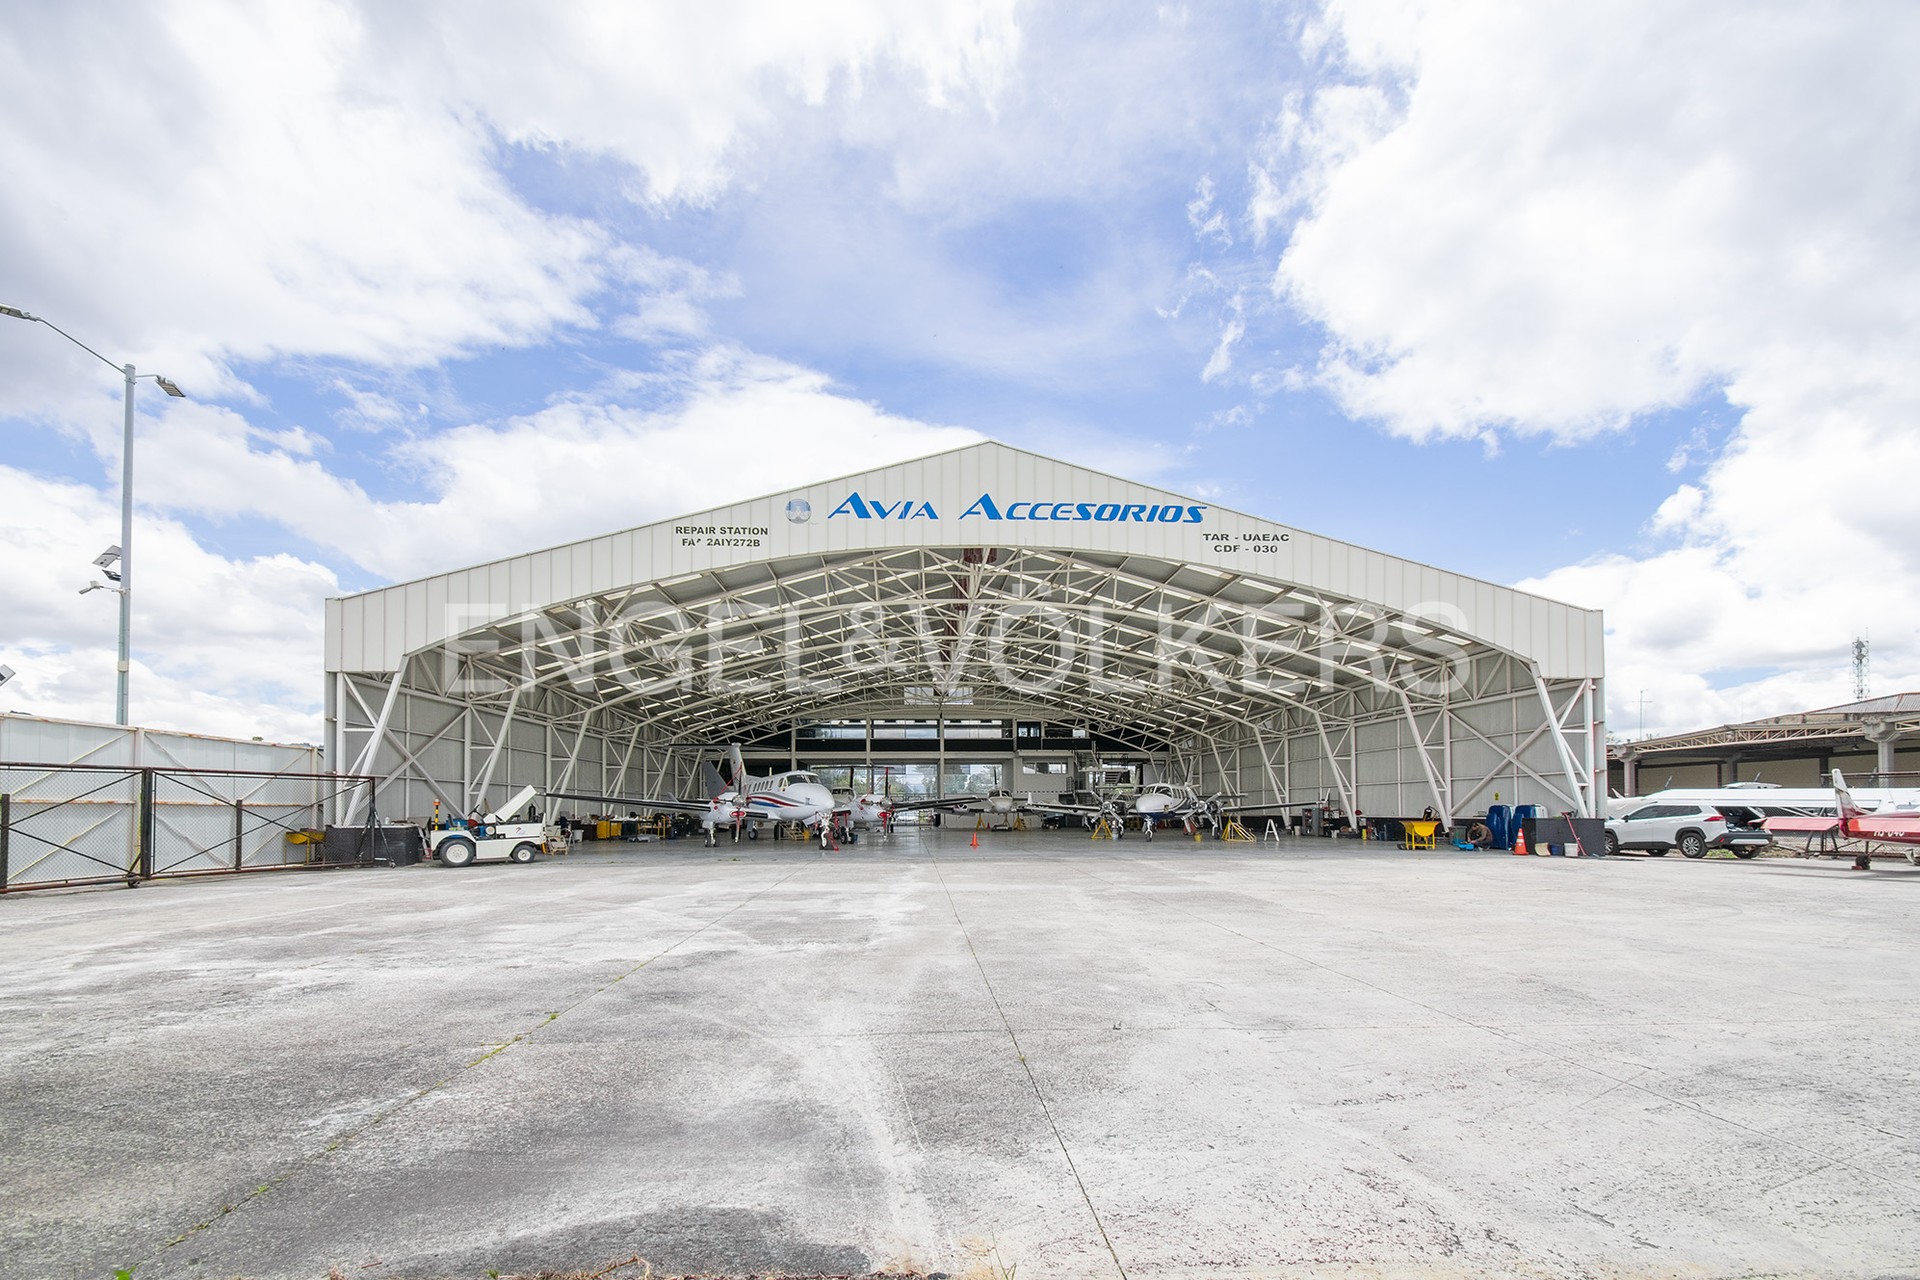 Industria / Almacén / Producción en Guaymaral - 06-Parqueadero de aeronaves